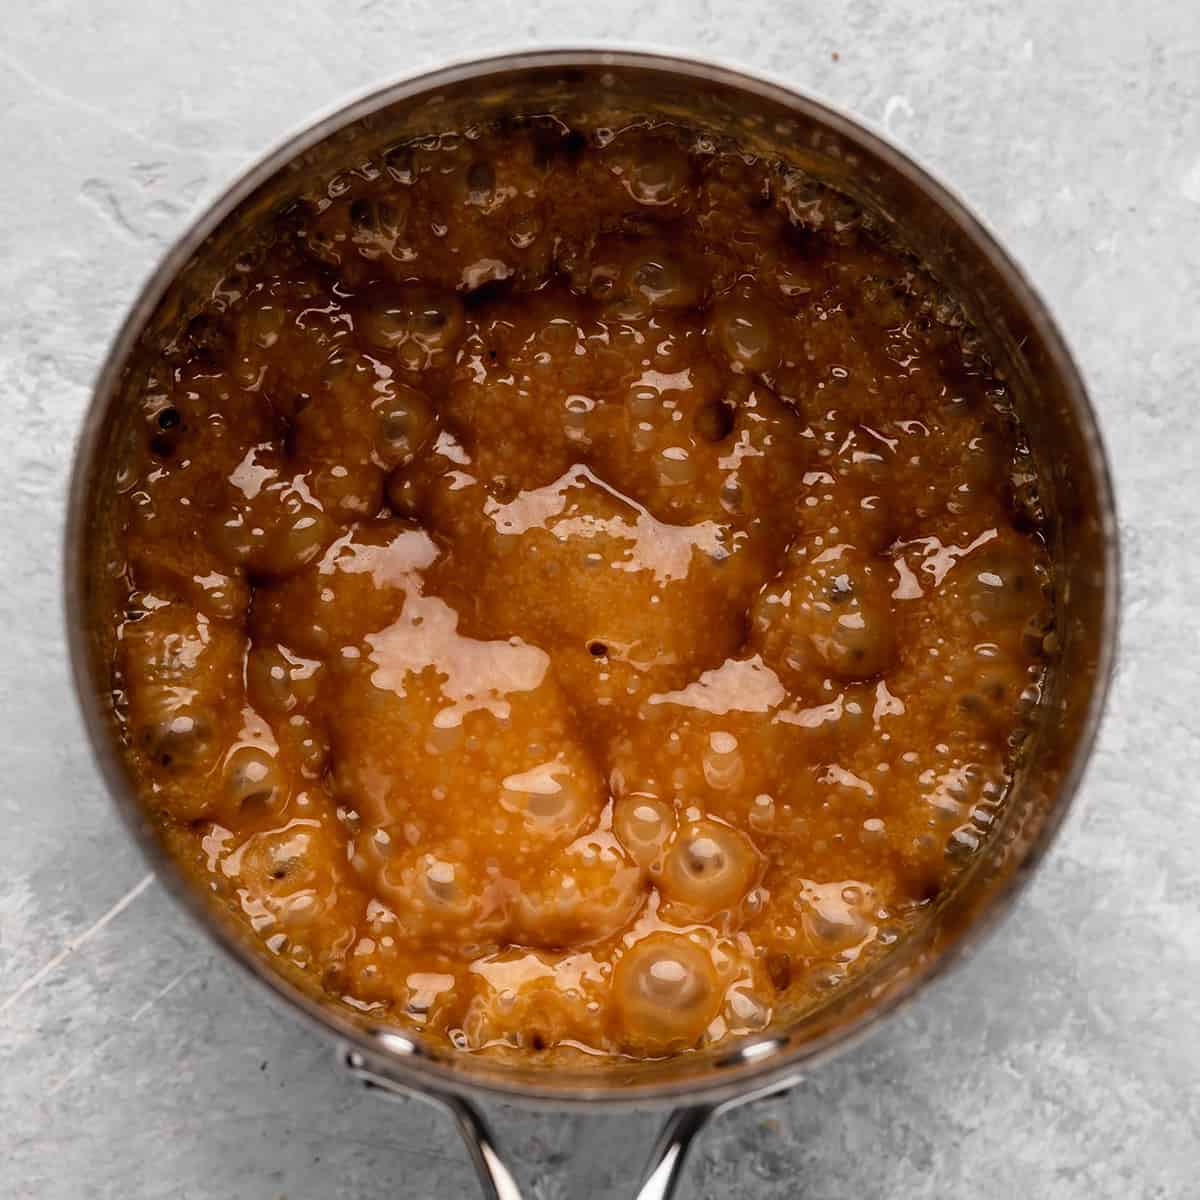 caramel sauce mixture boiling in a saucepan